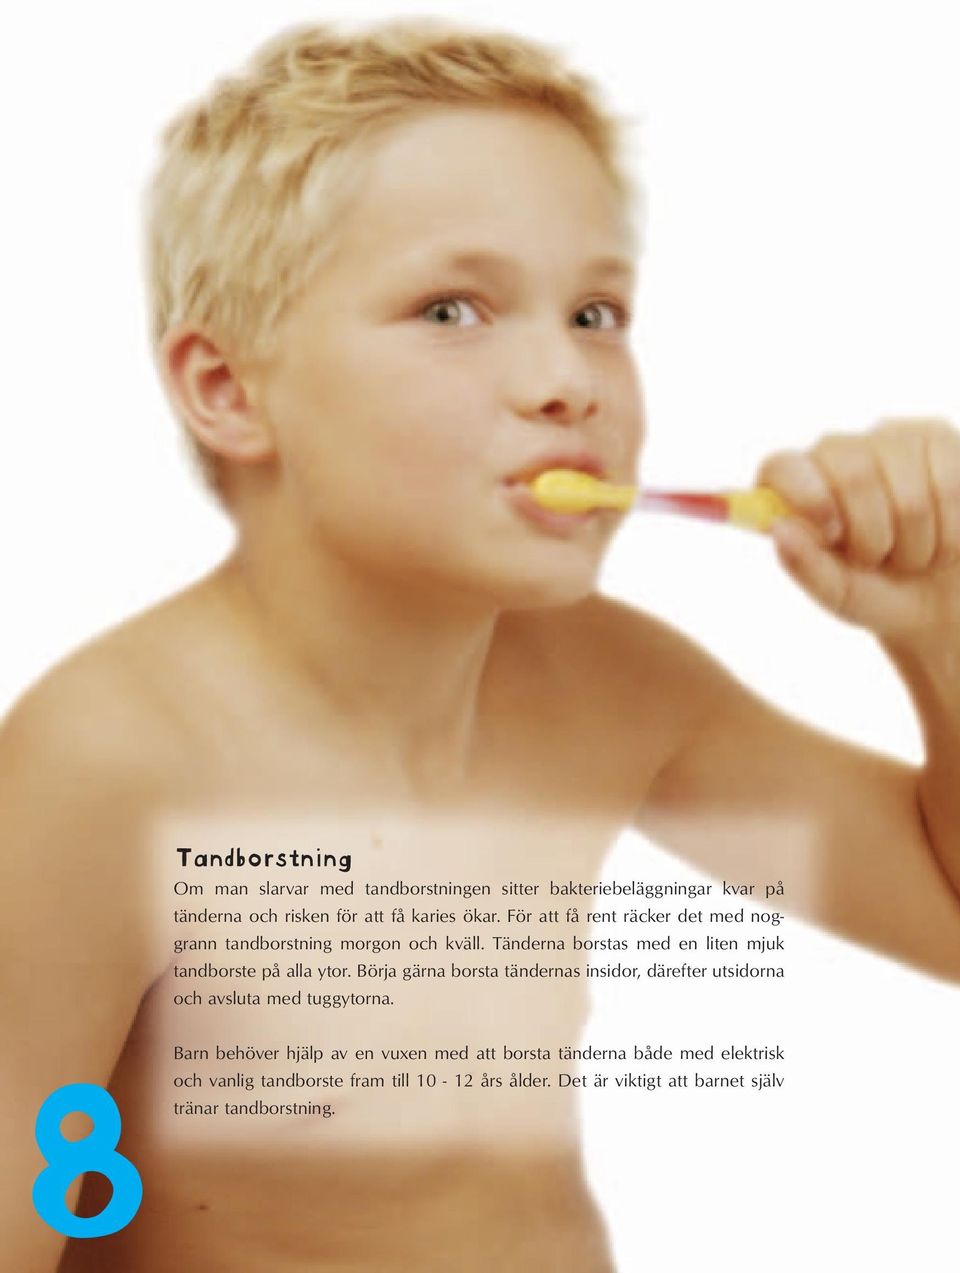 Börja gärna borsta tändernas insidor, därefter utsidorna och avsluta med tuggytorna.